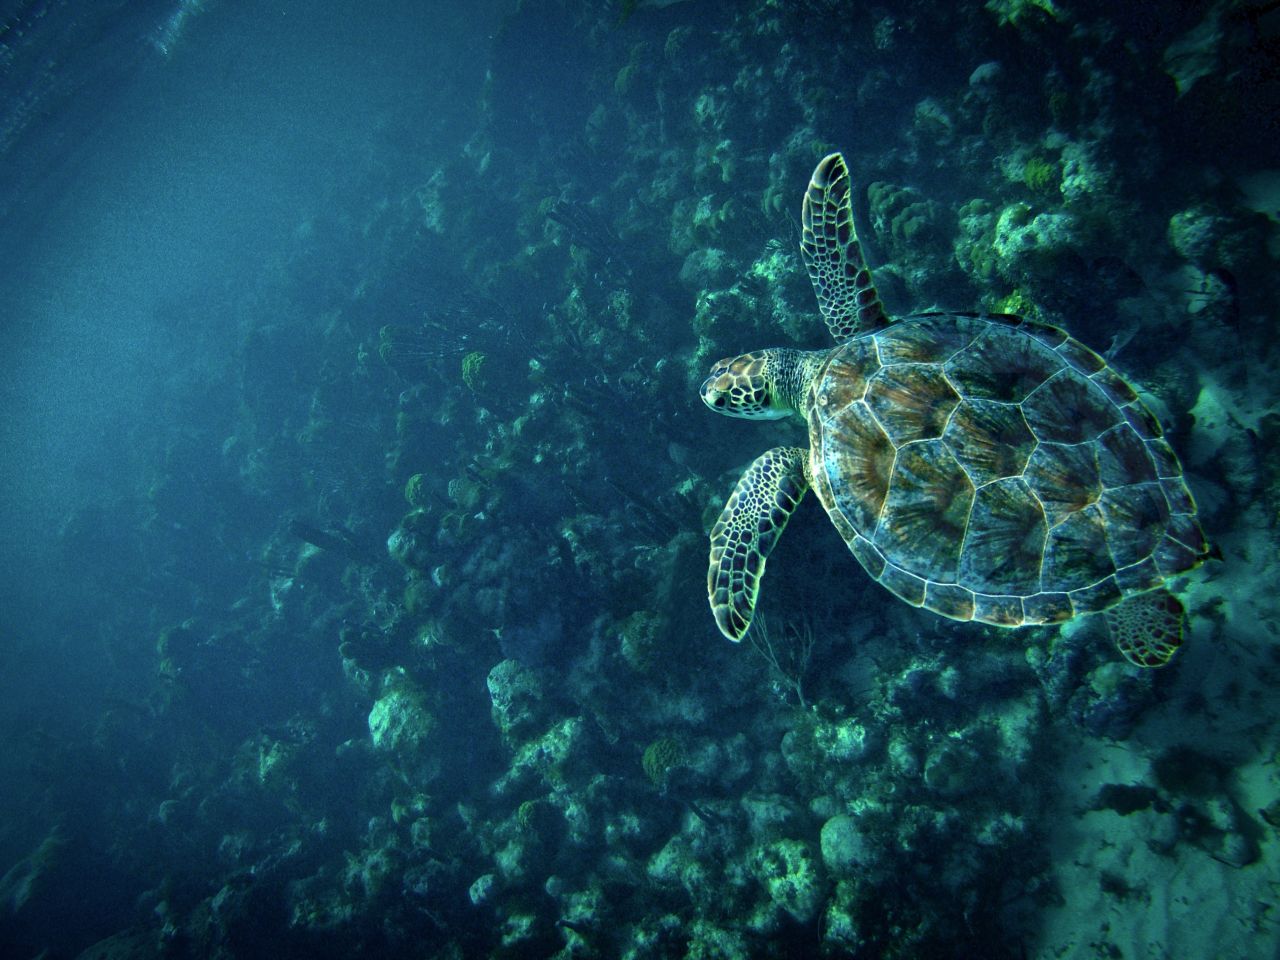 Daniel Surette fotografió a una tortuga en un arrecife de coral en la isla de Providenciales, en Turcas y Caicos. "Siempre y cuando no me acercara demasiado, me dejaba seguirla durante un rato". 